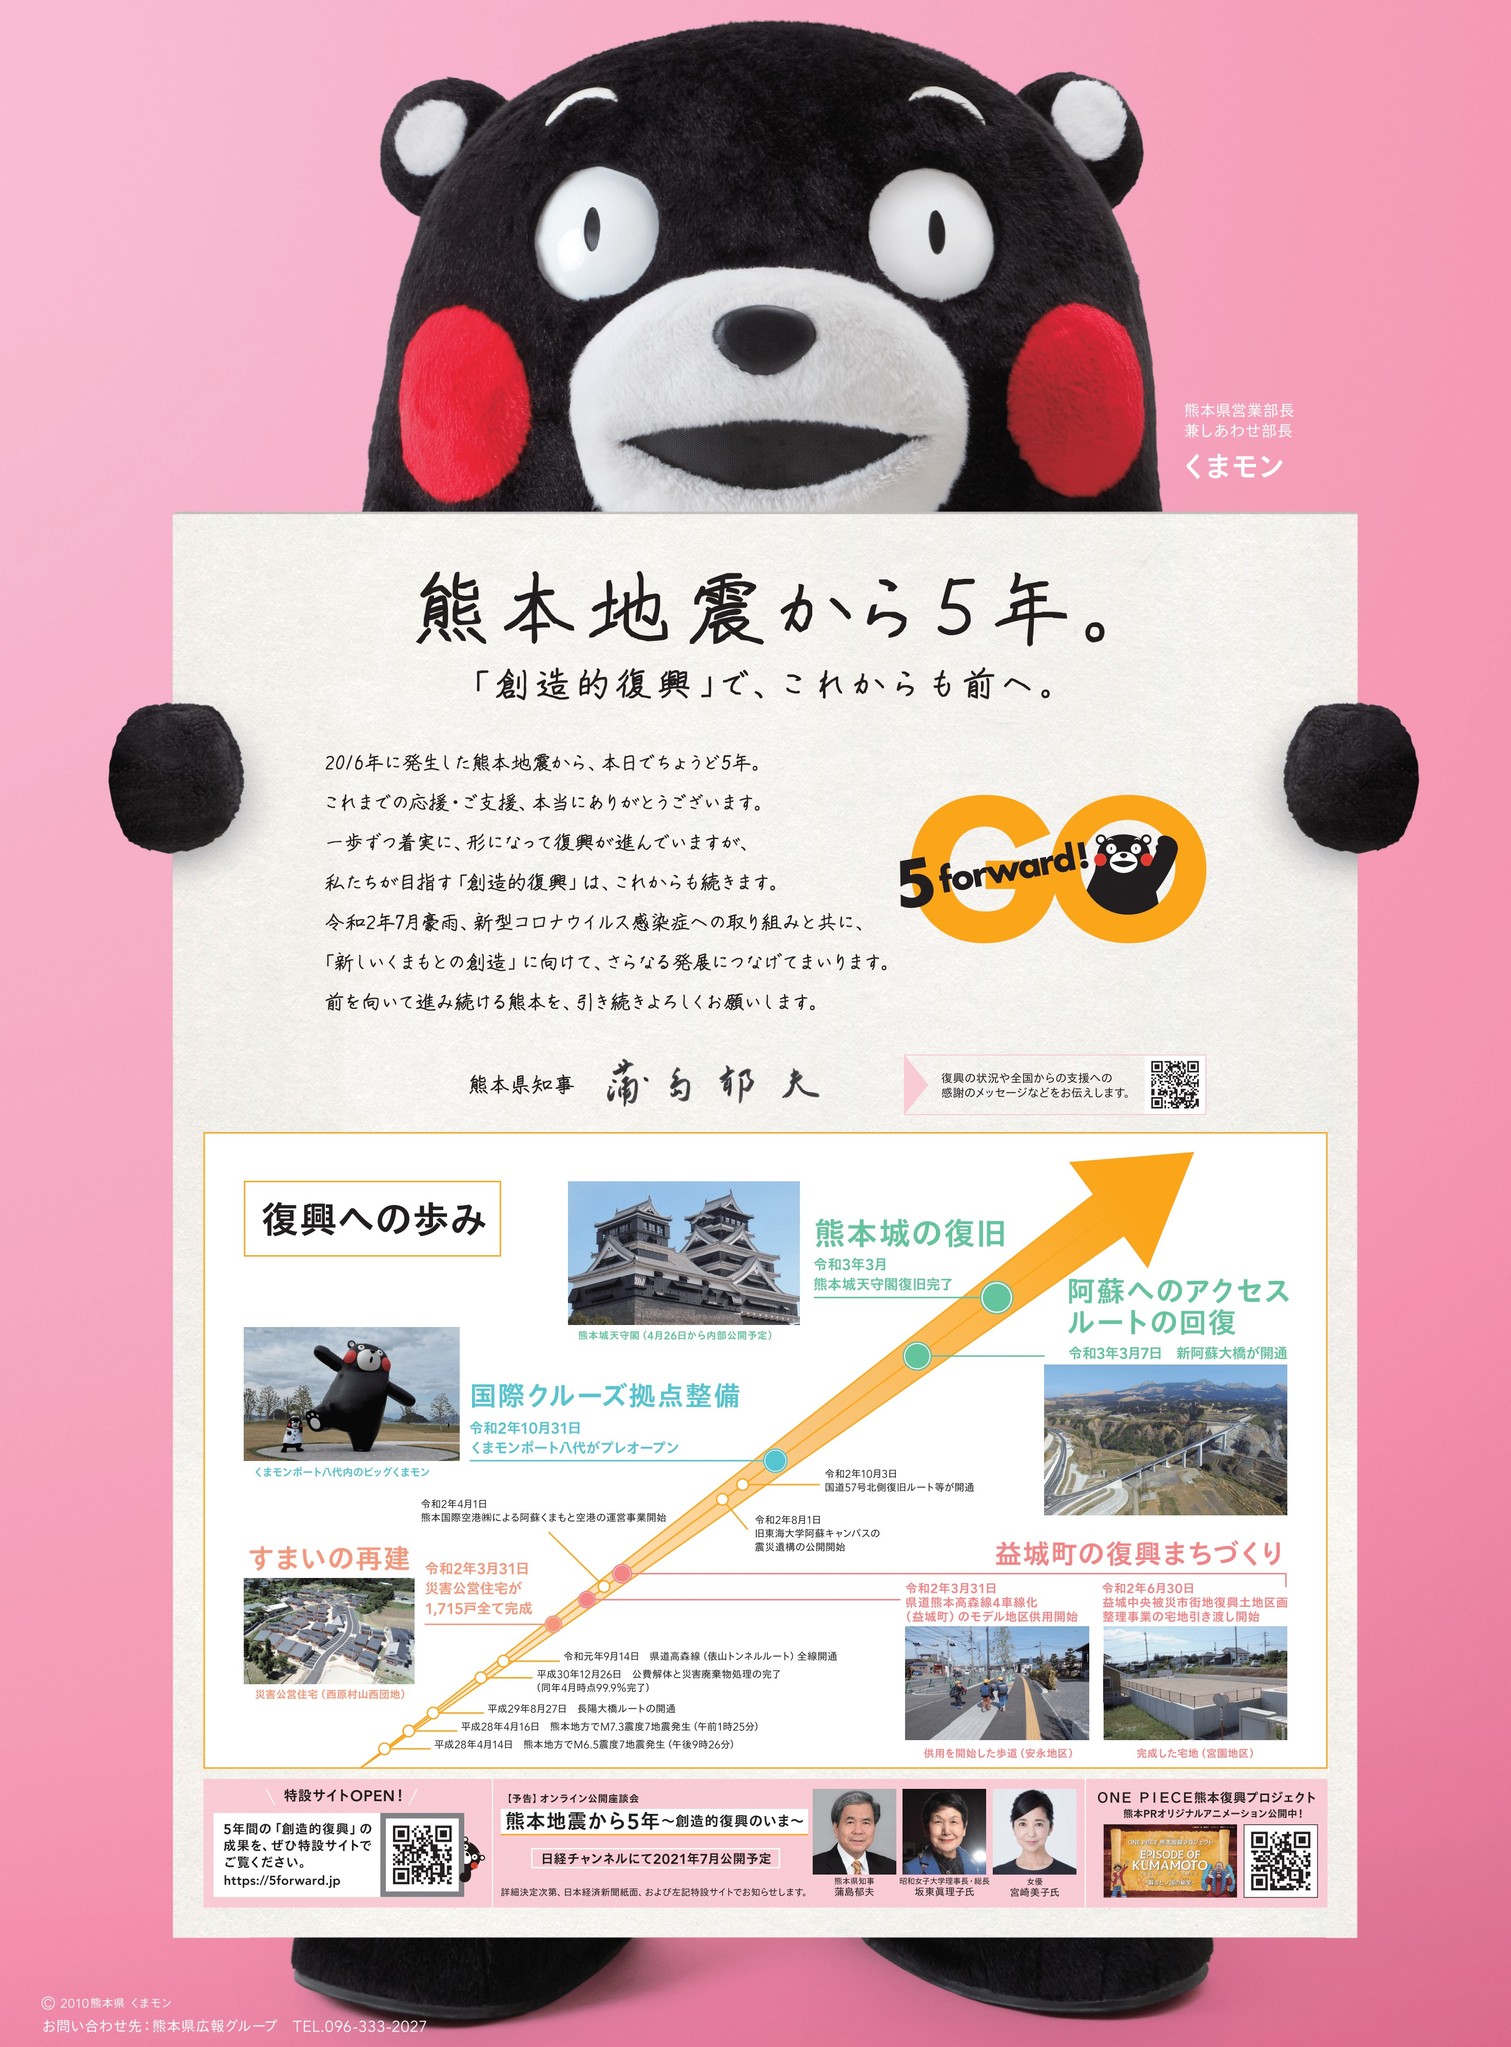 身近に くまもと News Letter Vol 1 4月14日 熊本地震から5年 あの日からありがとう 復興プロジェクトを実施 いつか来熊してほしい 復興を遂げたスポットを紹介 熊本県のプレスリリース